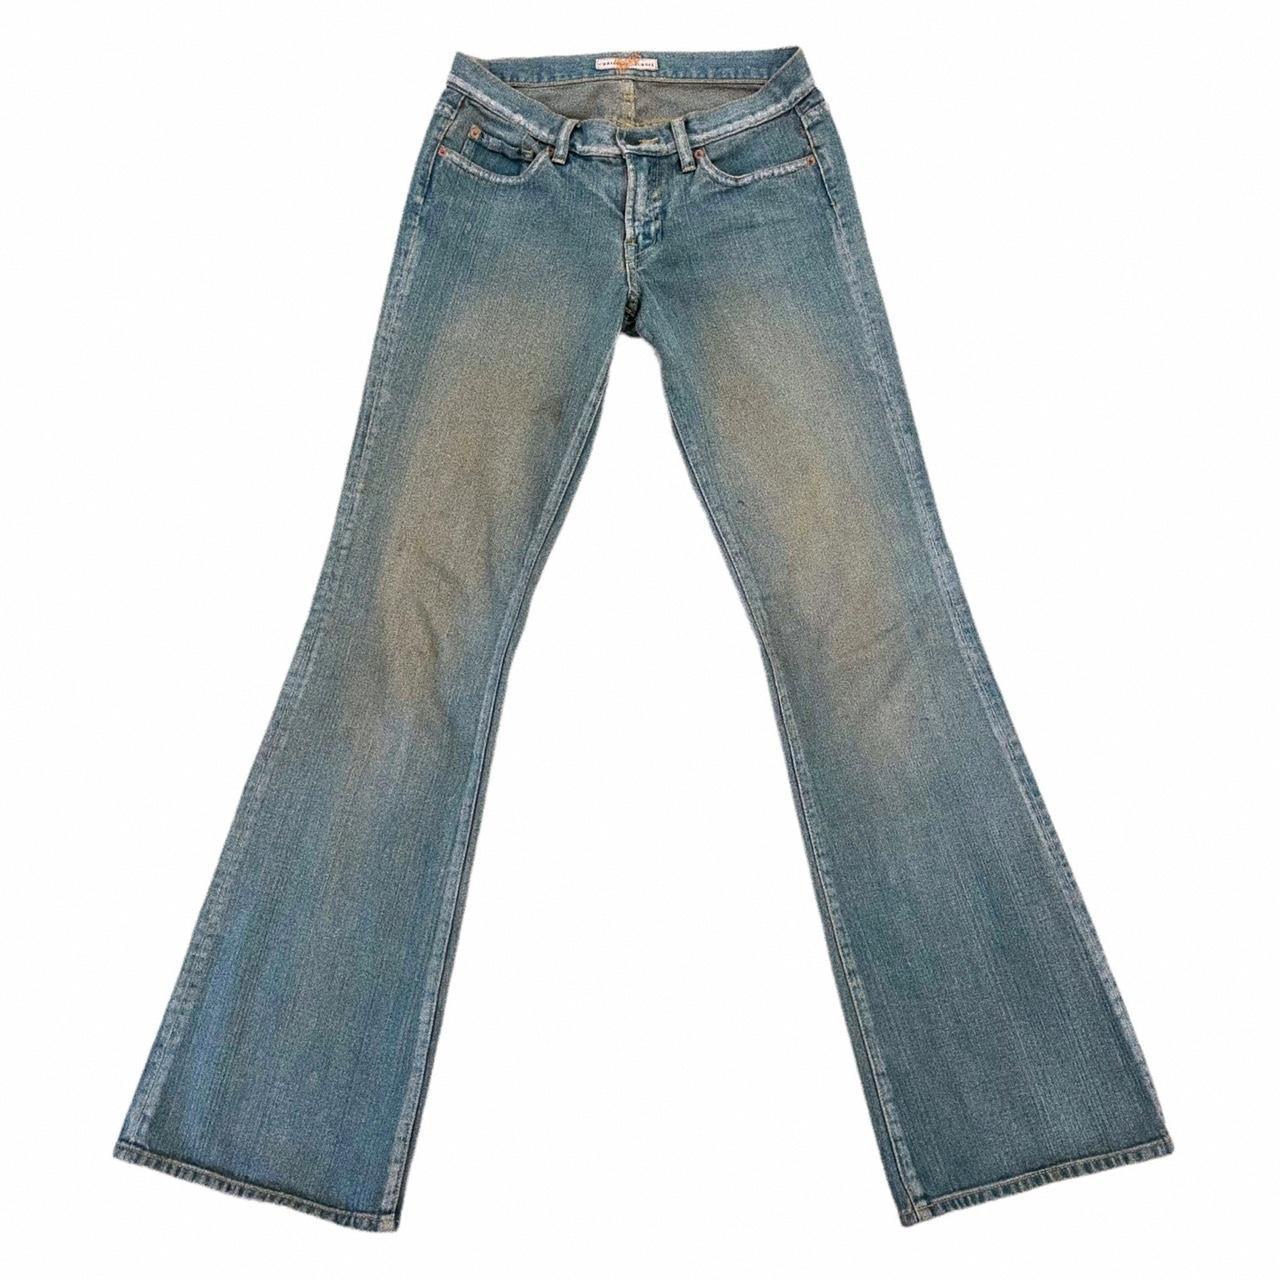 Y2K Christian Lacroix Jeans | unreal vintage... - Depop